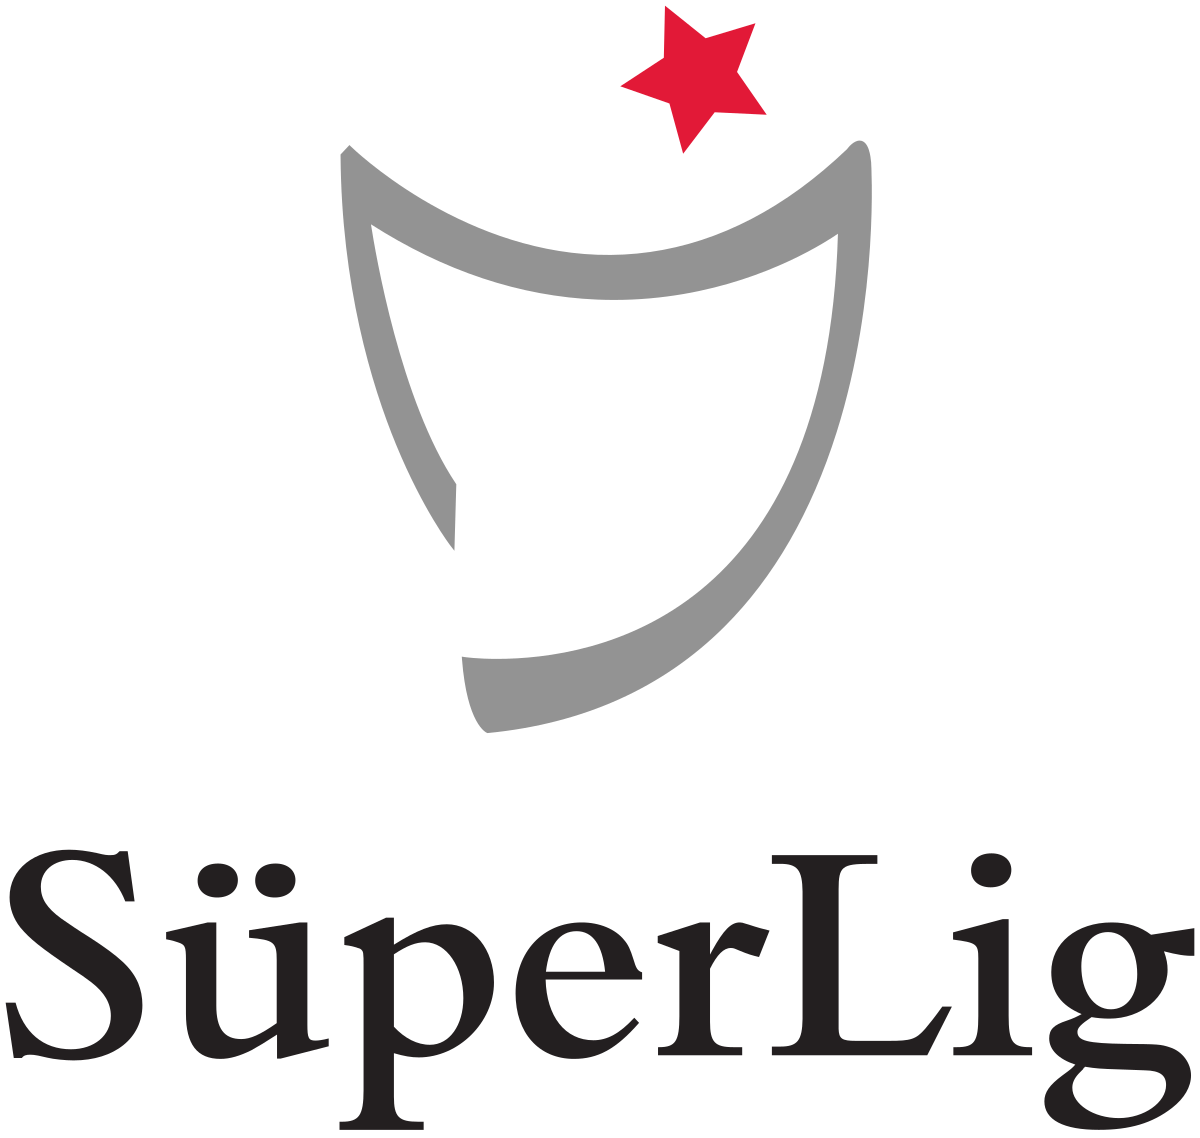 Turkish Super Lig